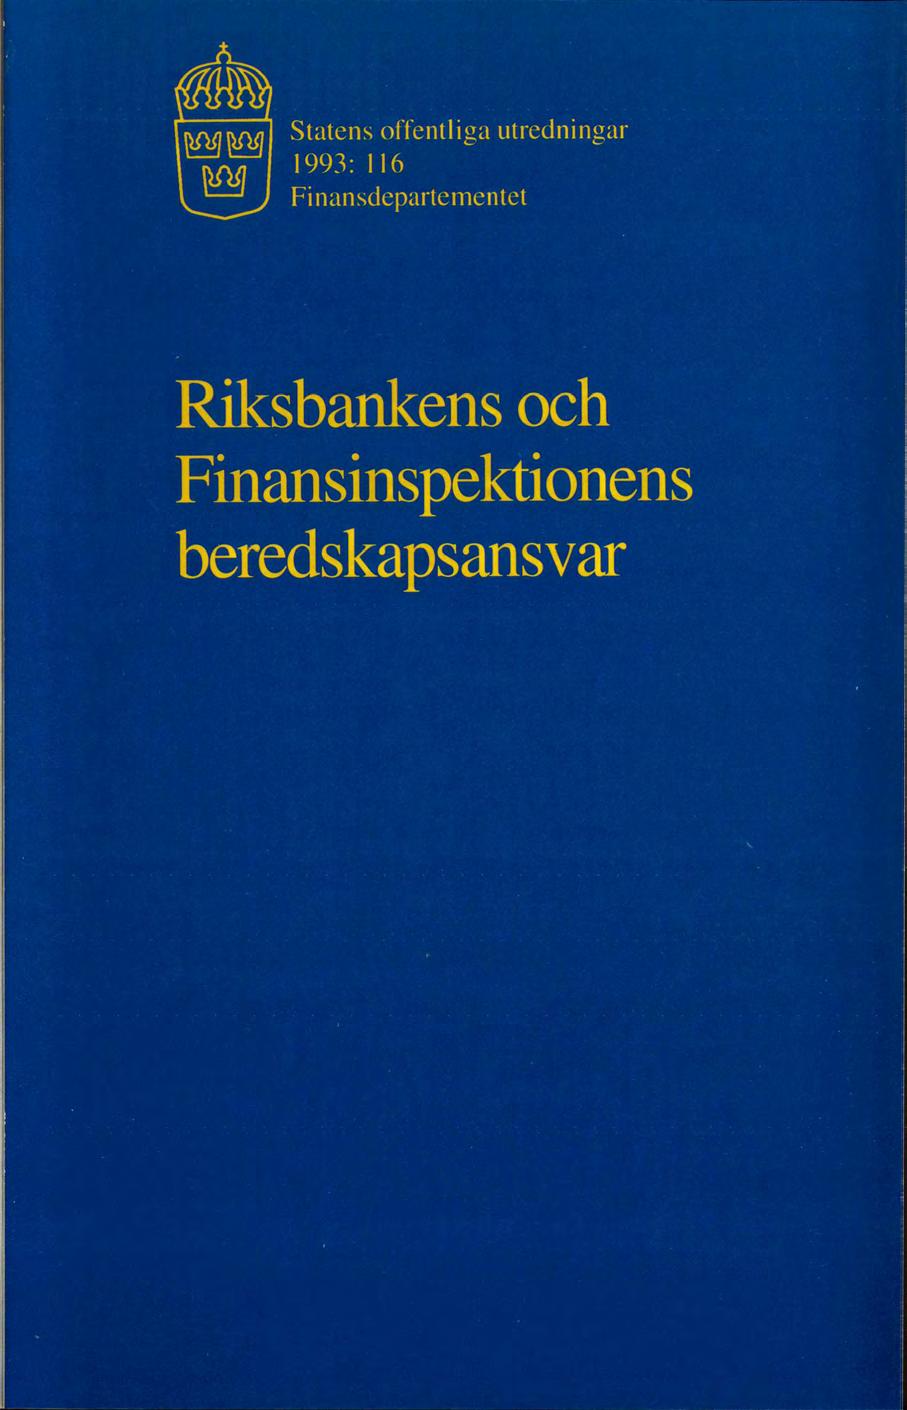 t Statens offentlga 1993: 116 Fnansdepartementet